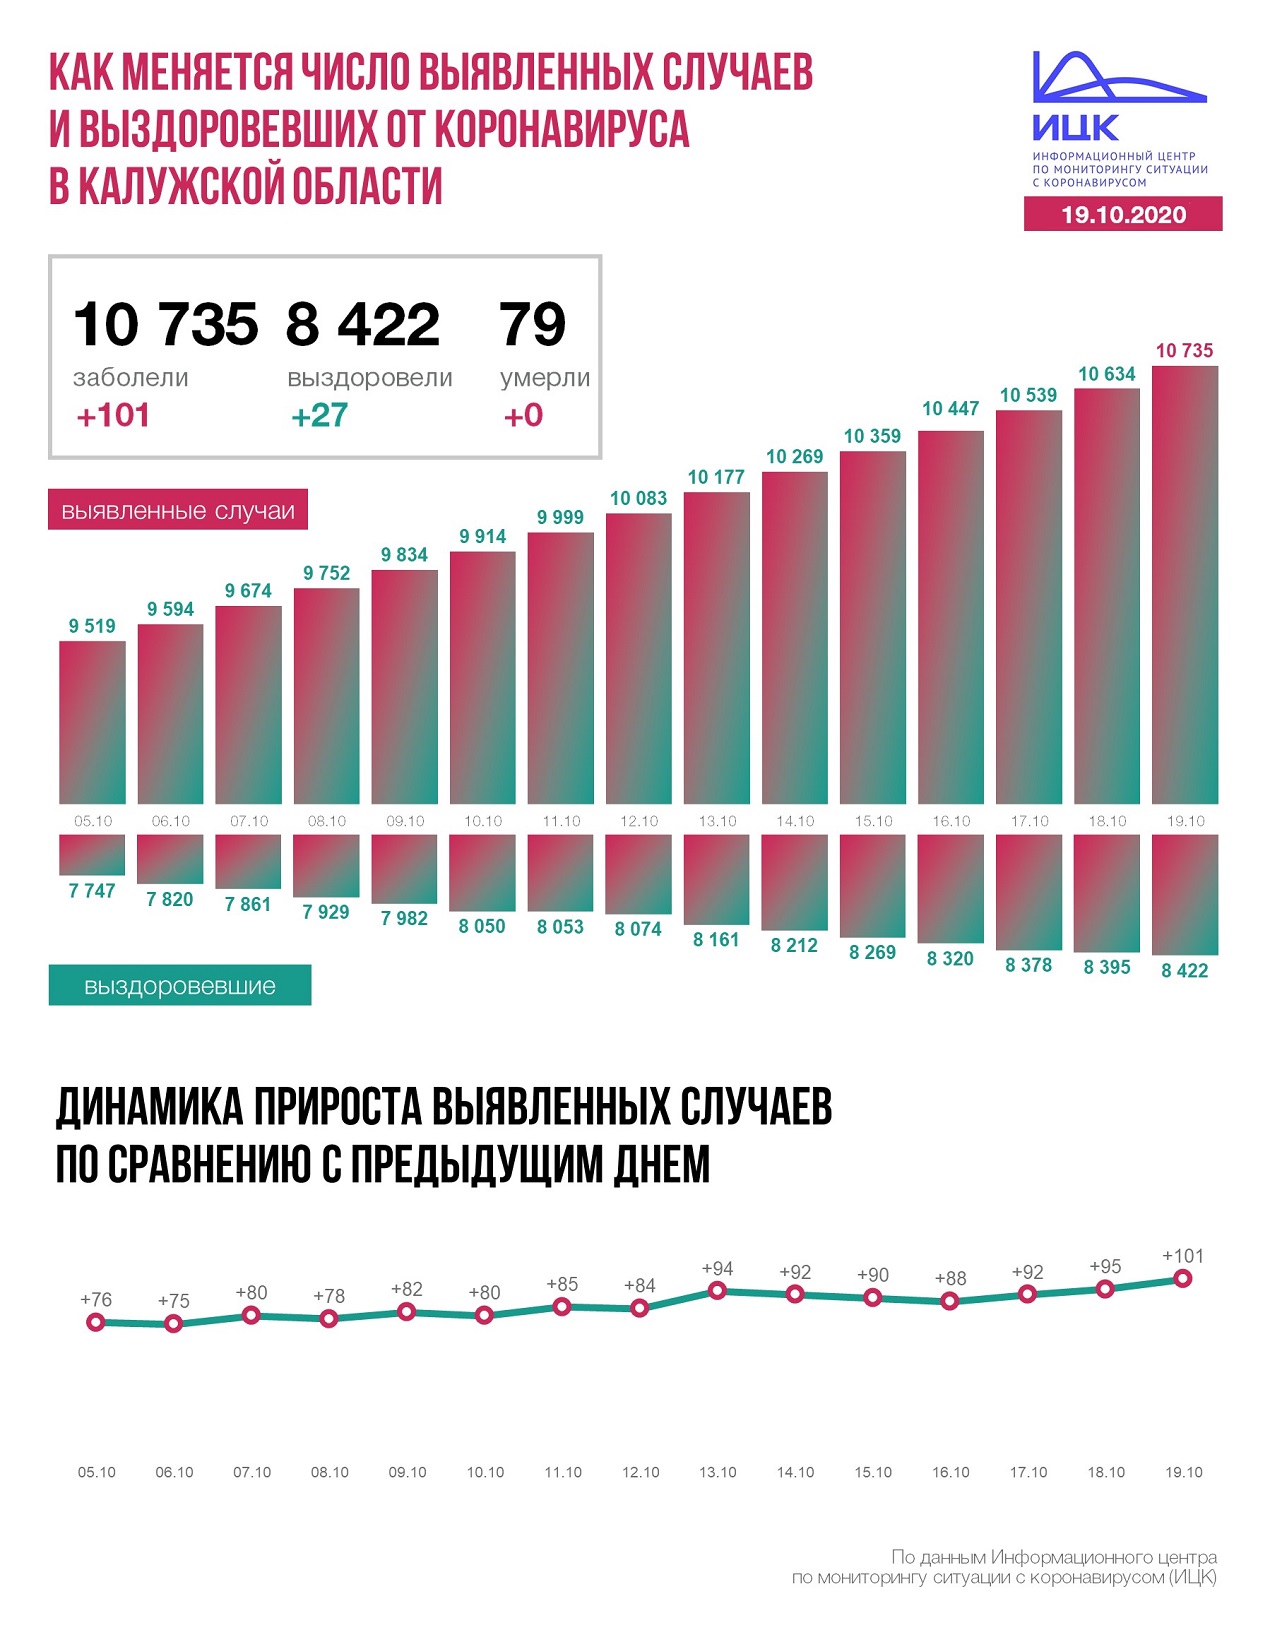 Официальные данные федерального оперативного штаба по коронавирусу в Калужской области на 19 октября 2020 года.